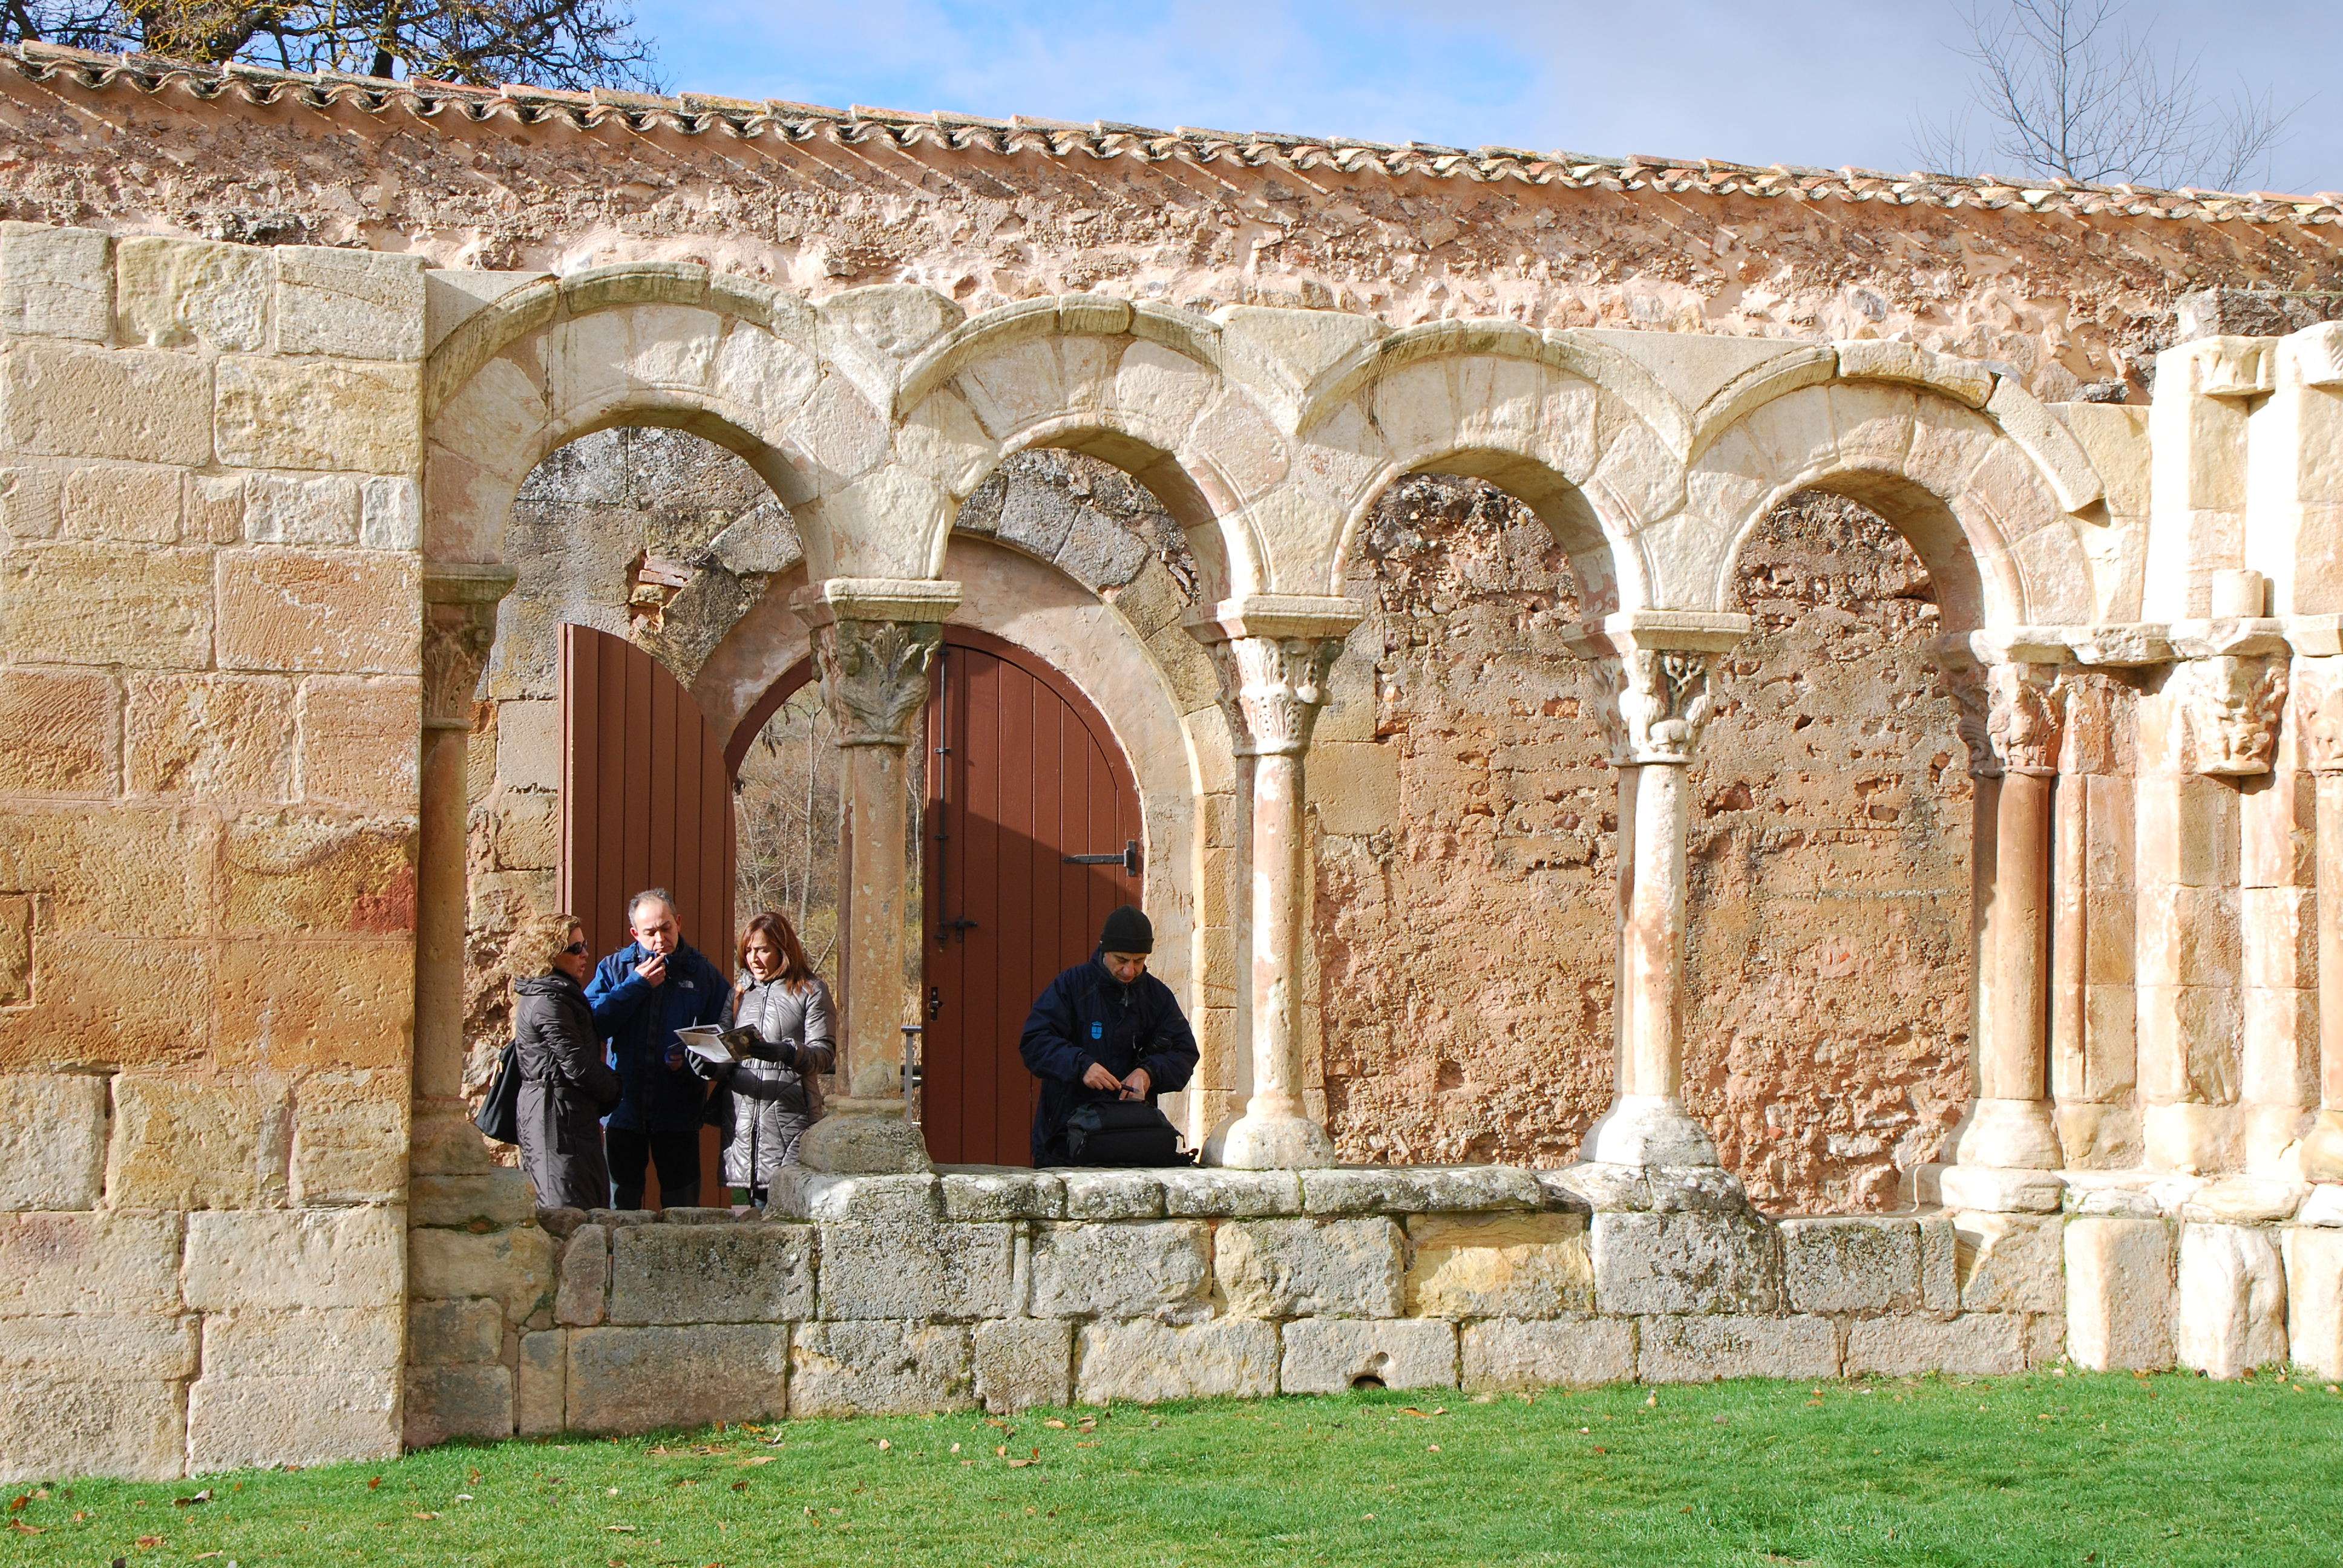 Monasterio de San Juan de Duero. Un enigma - Blogs de España - Monasterio de San Juan de Duero (4)